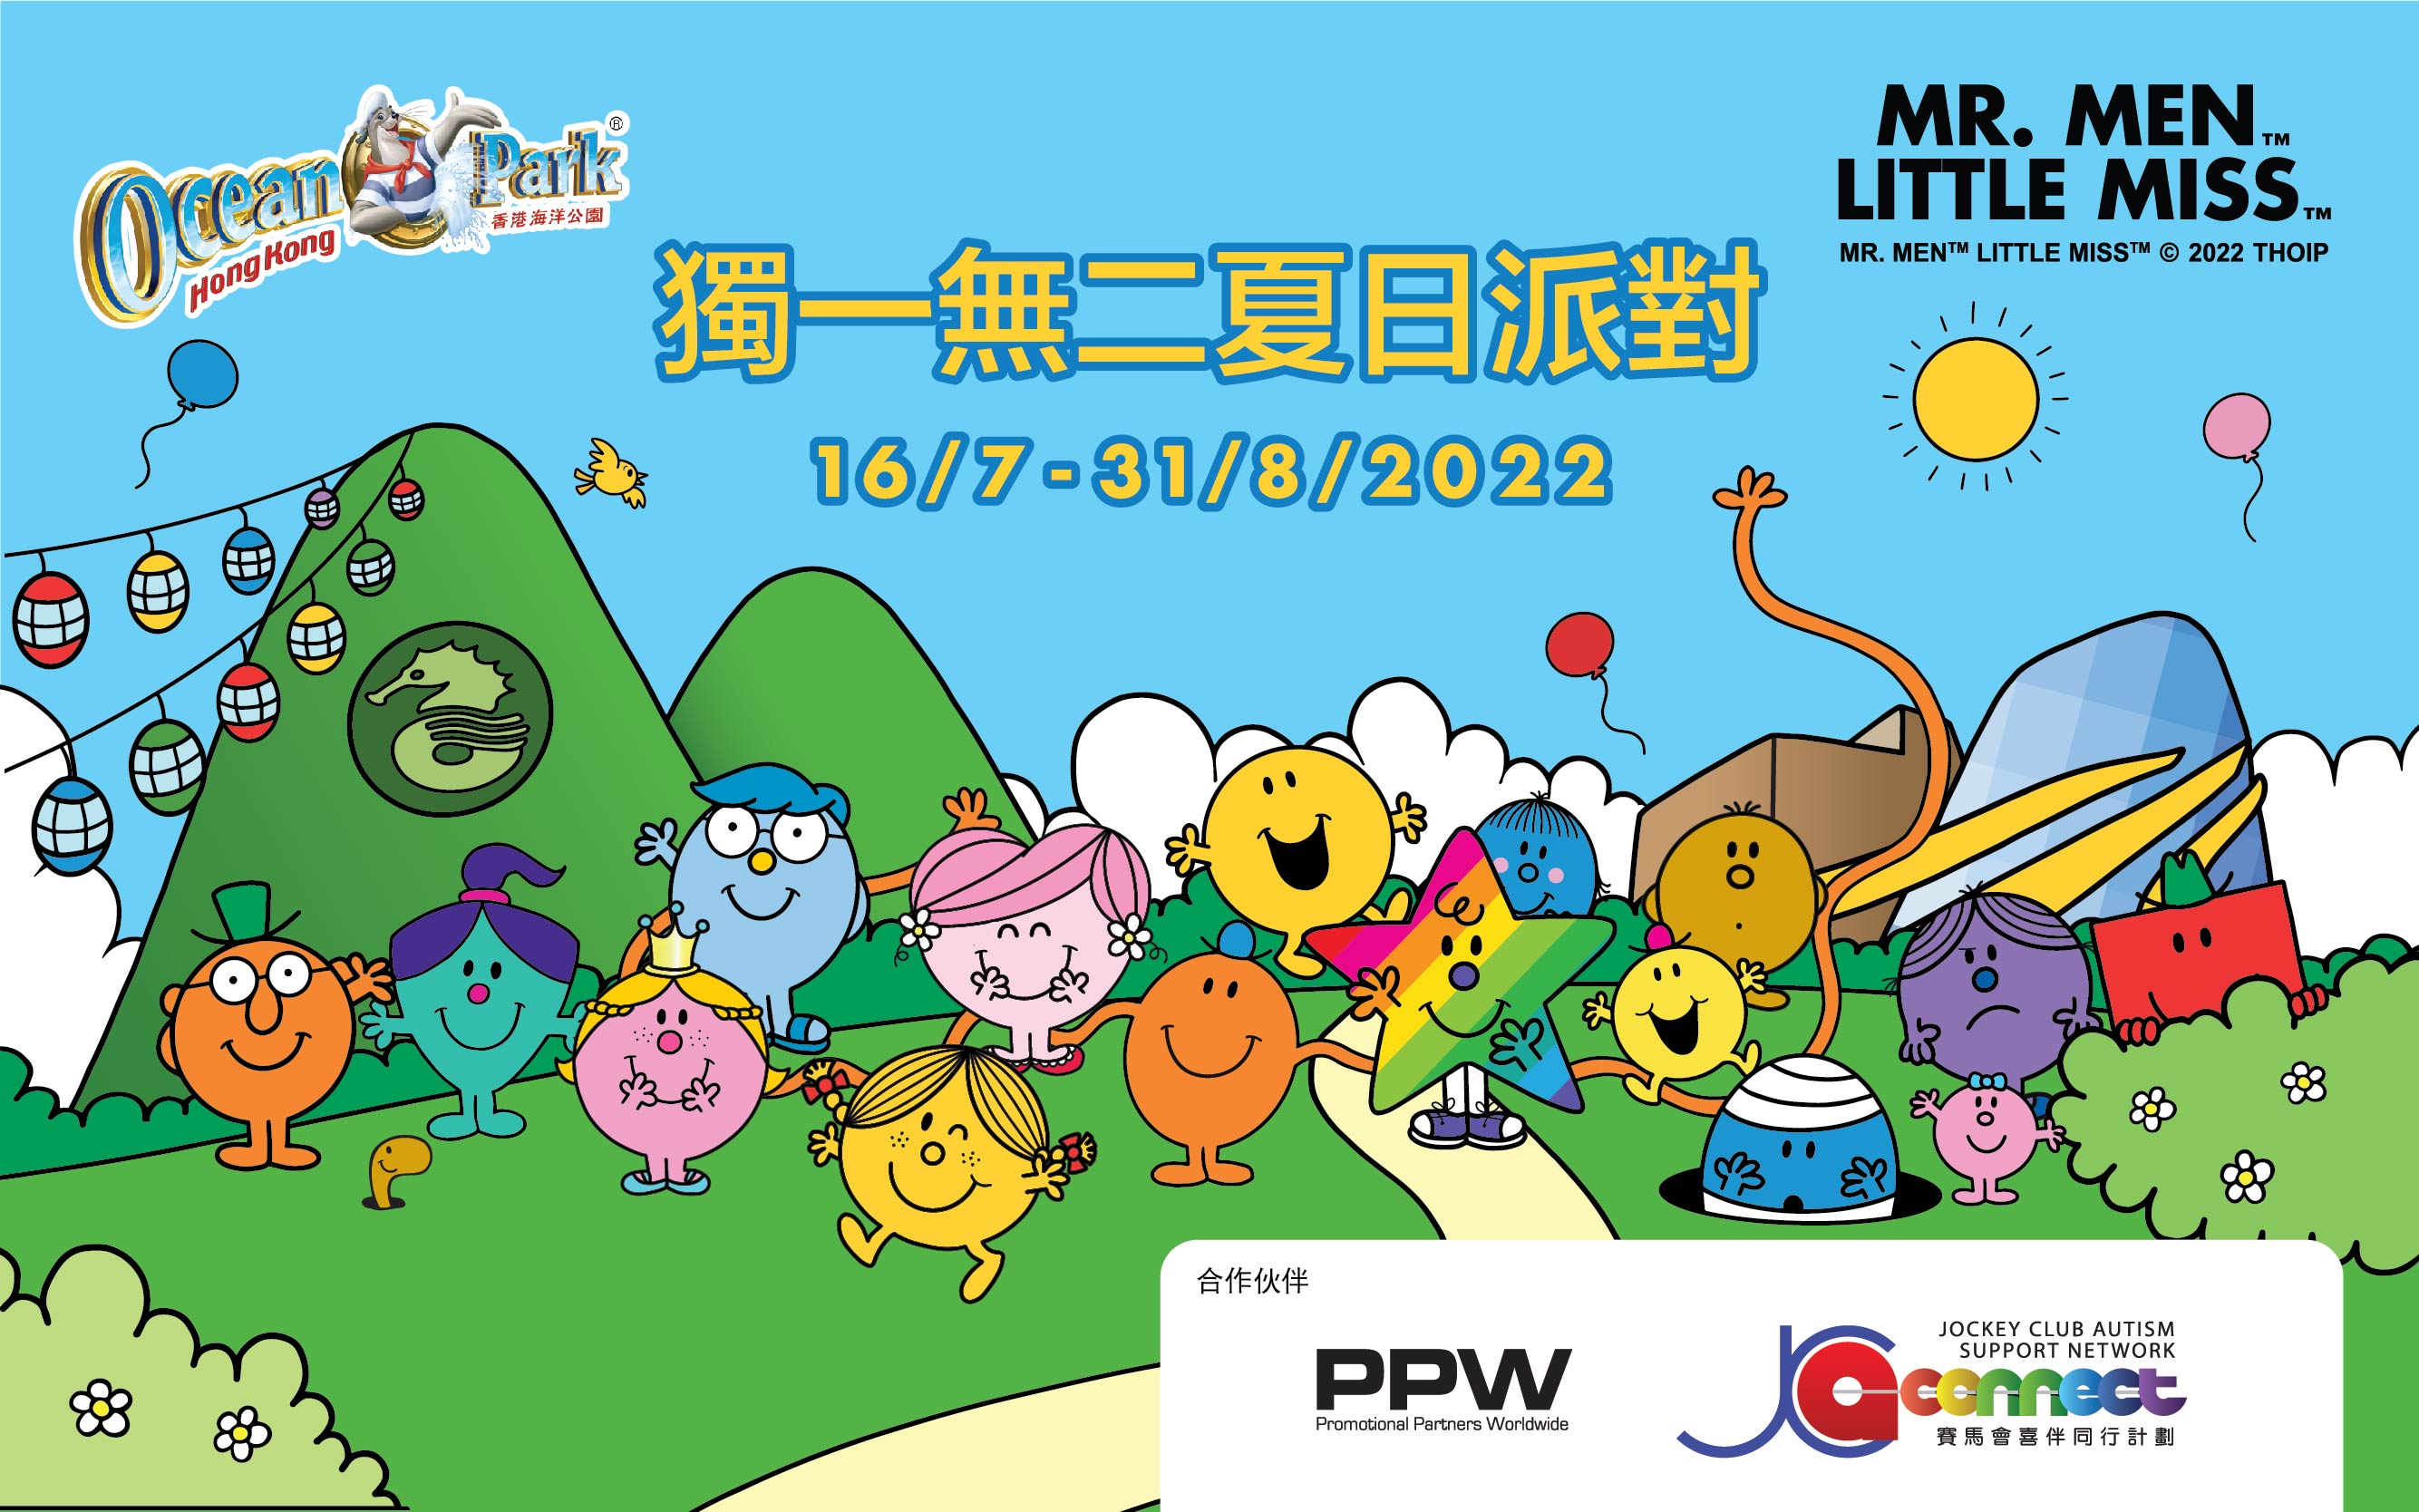 https://media.oceanpark.com.hk/files/s3fs-public/summer-event-inner-banner-mobile-tc.jpg